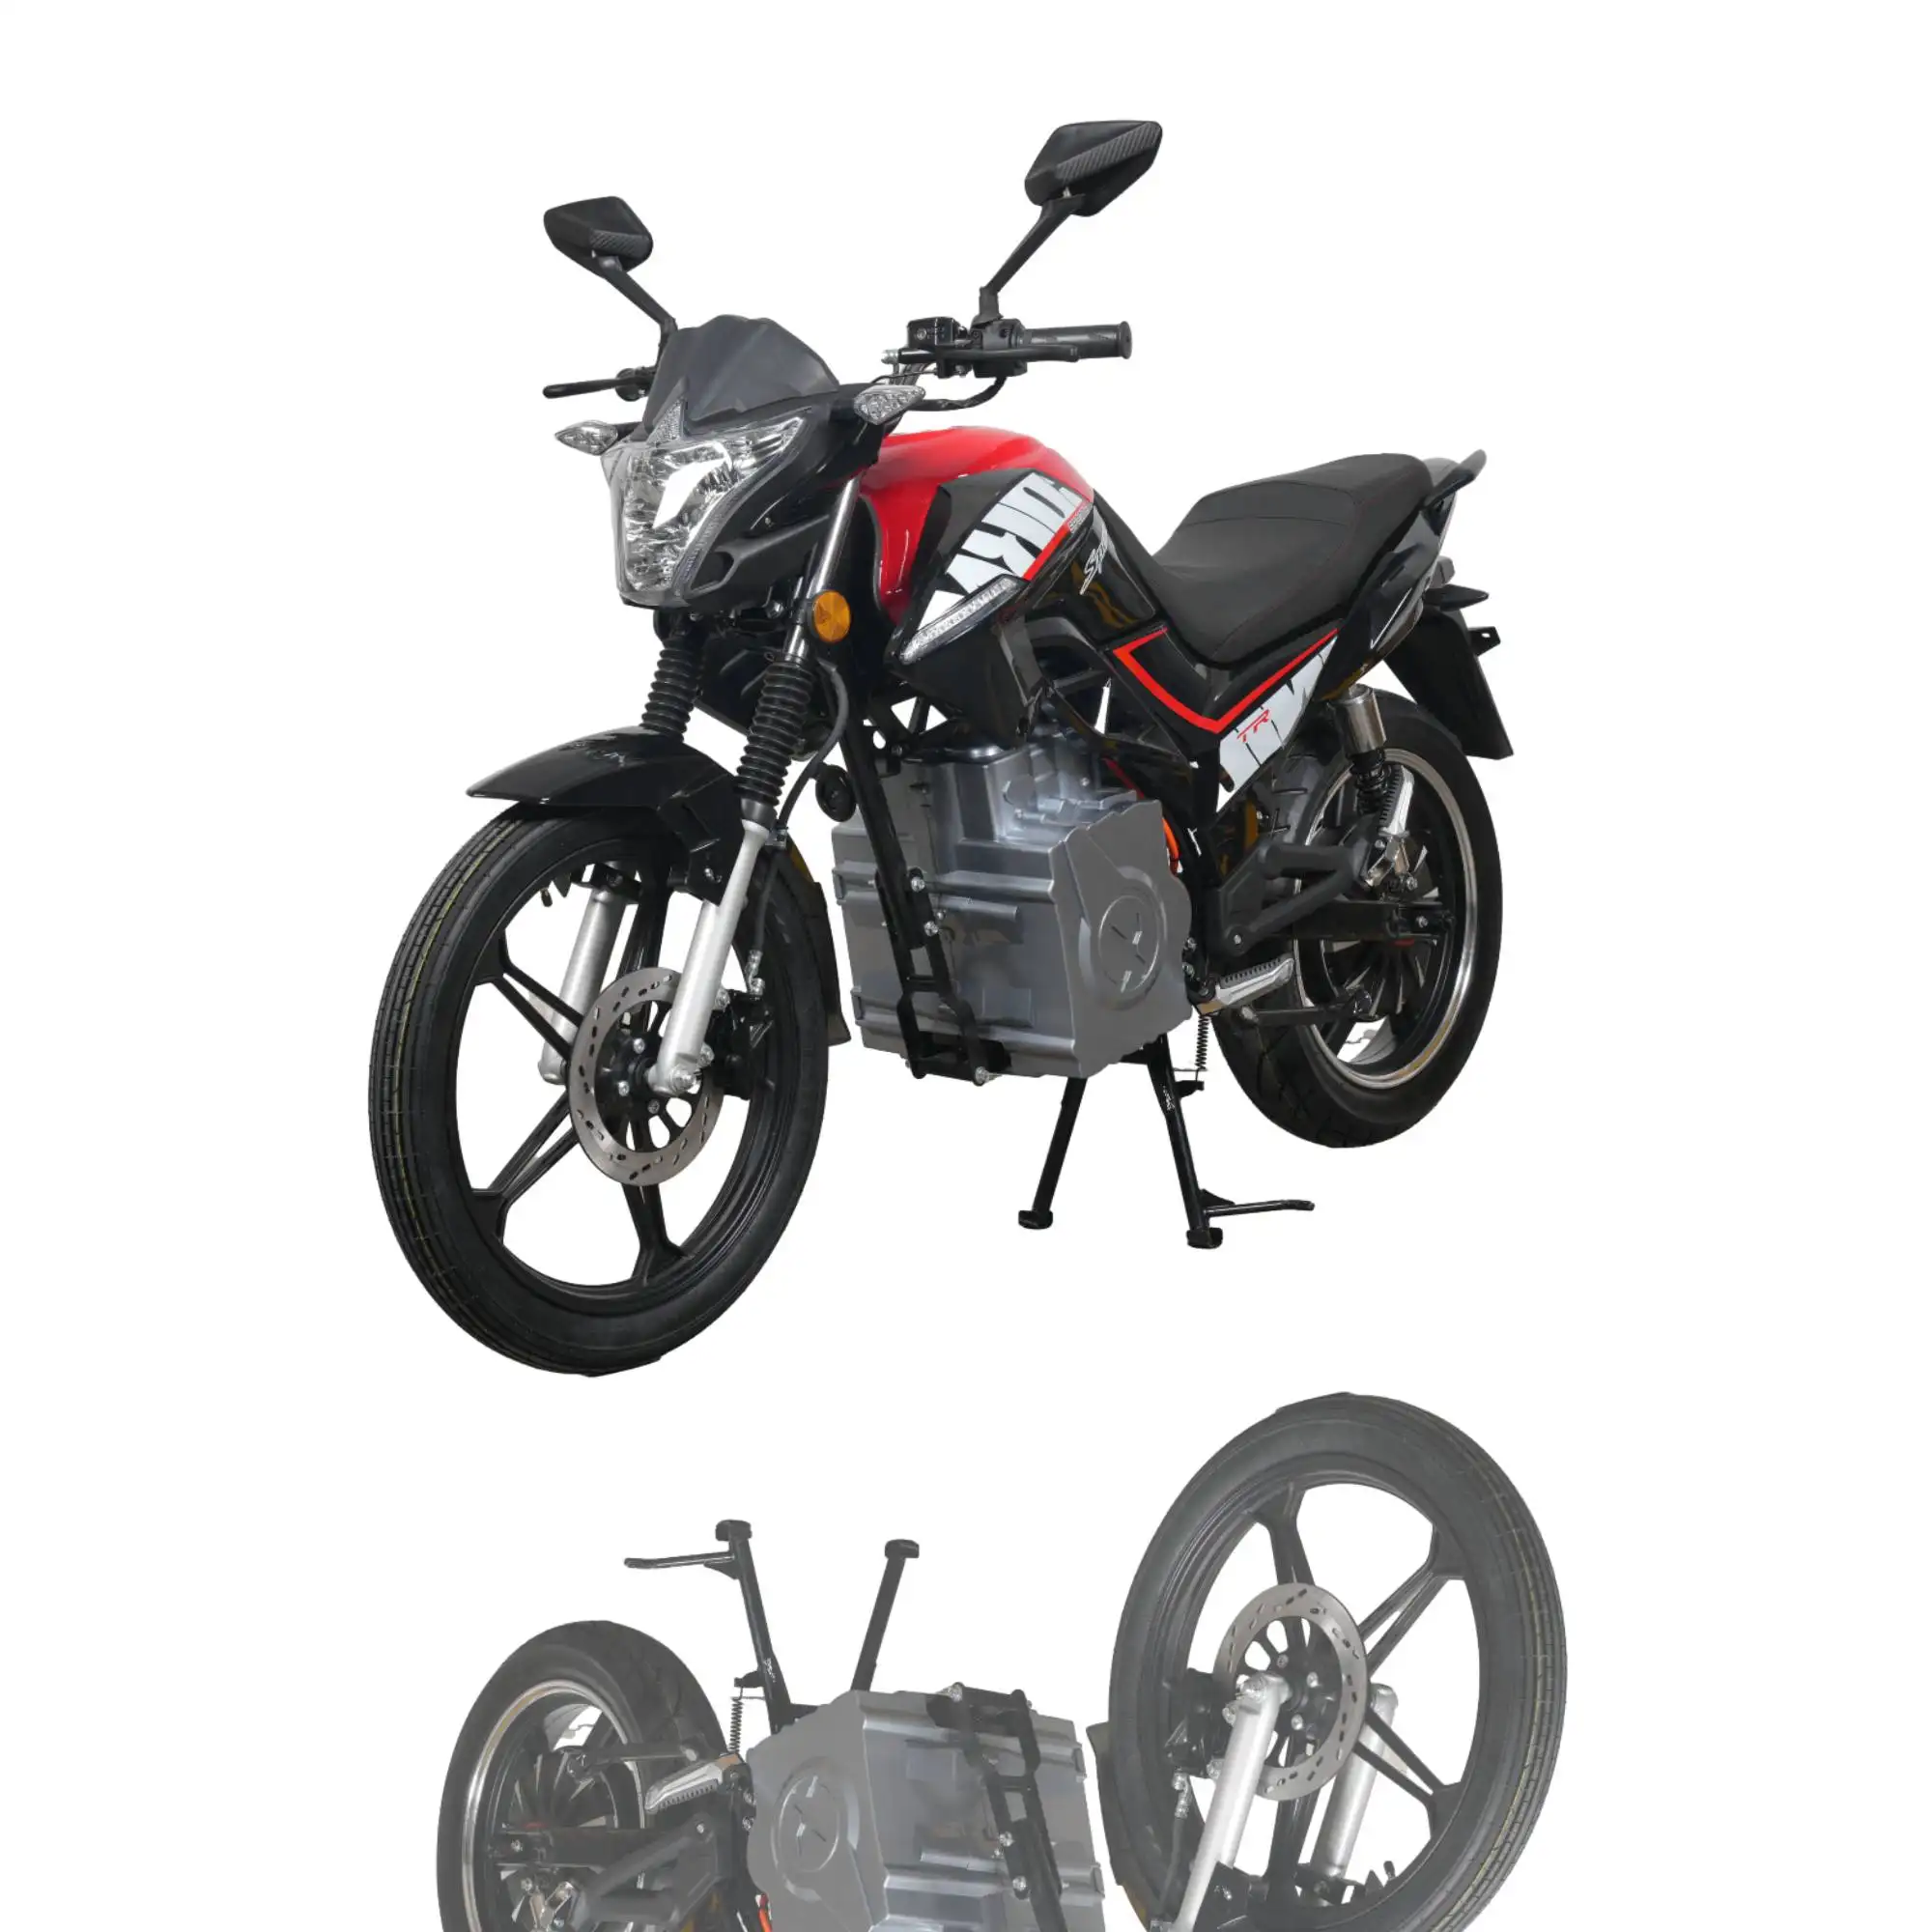 Moto tout-terrain personnalisée 3000w Super Power Chopper Dirt Bike pour adultes